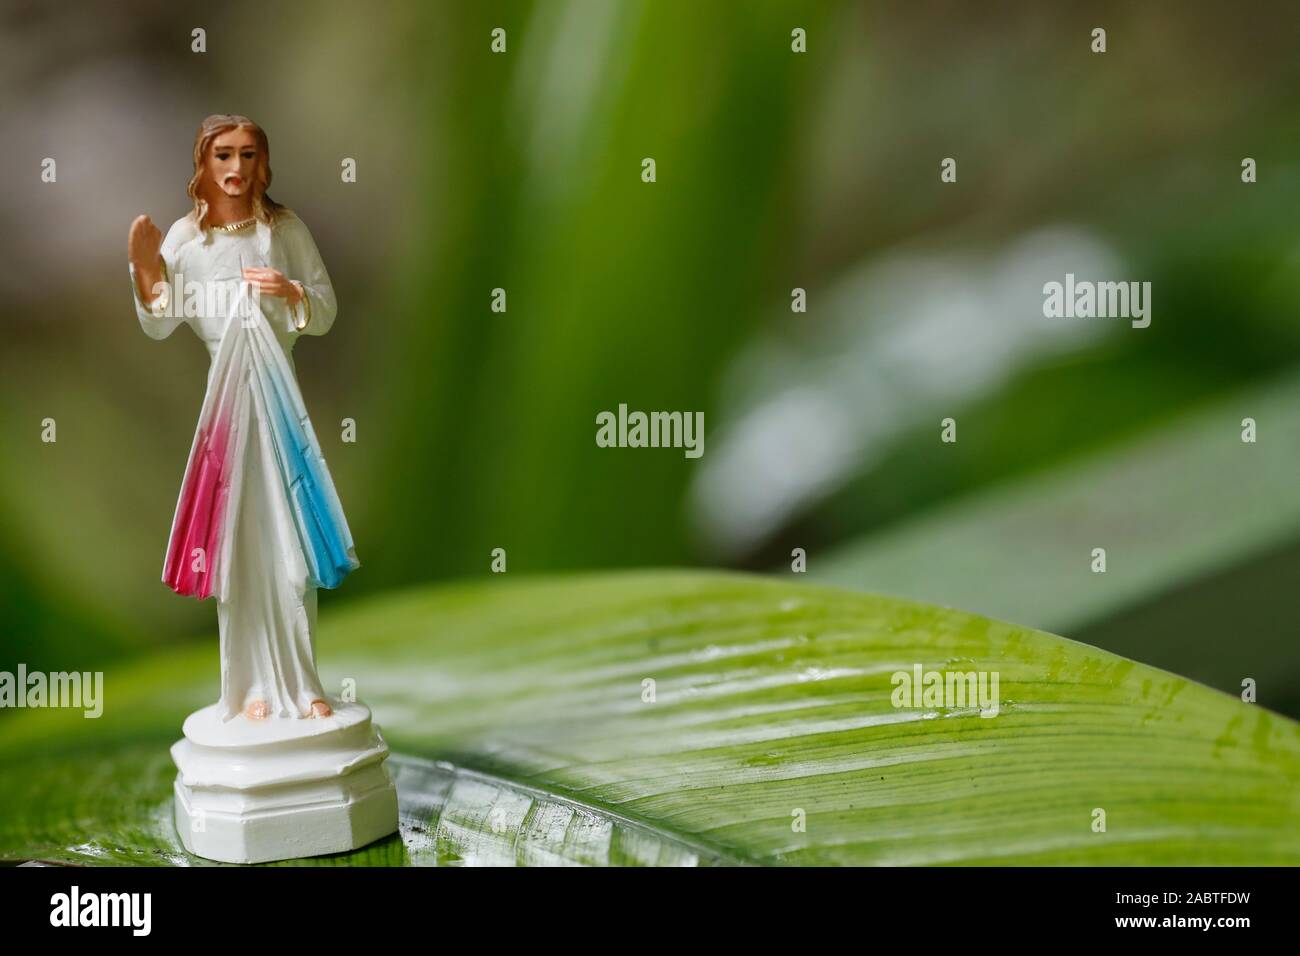 La Divine Miséricorde de Jésus statue avec la couleur verte de l'arbre. Kep. Le Cambodge. Banque D'Images